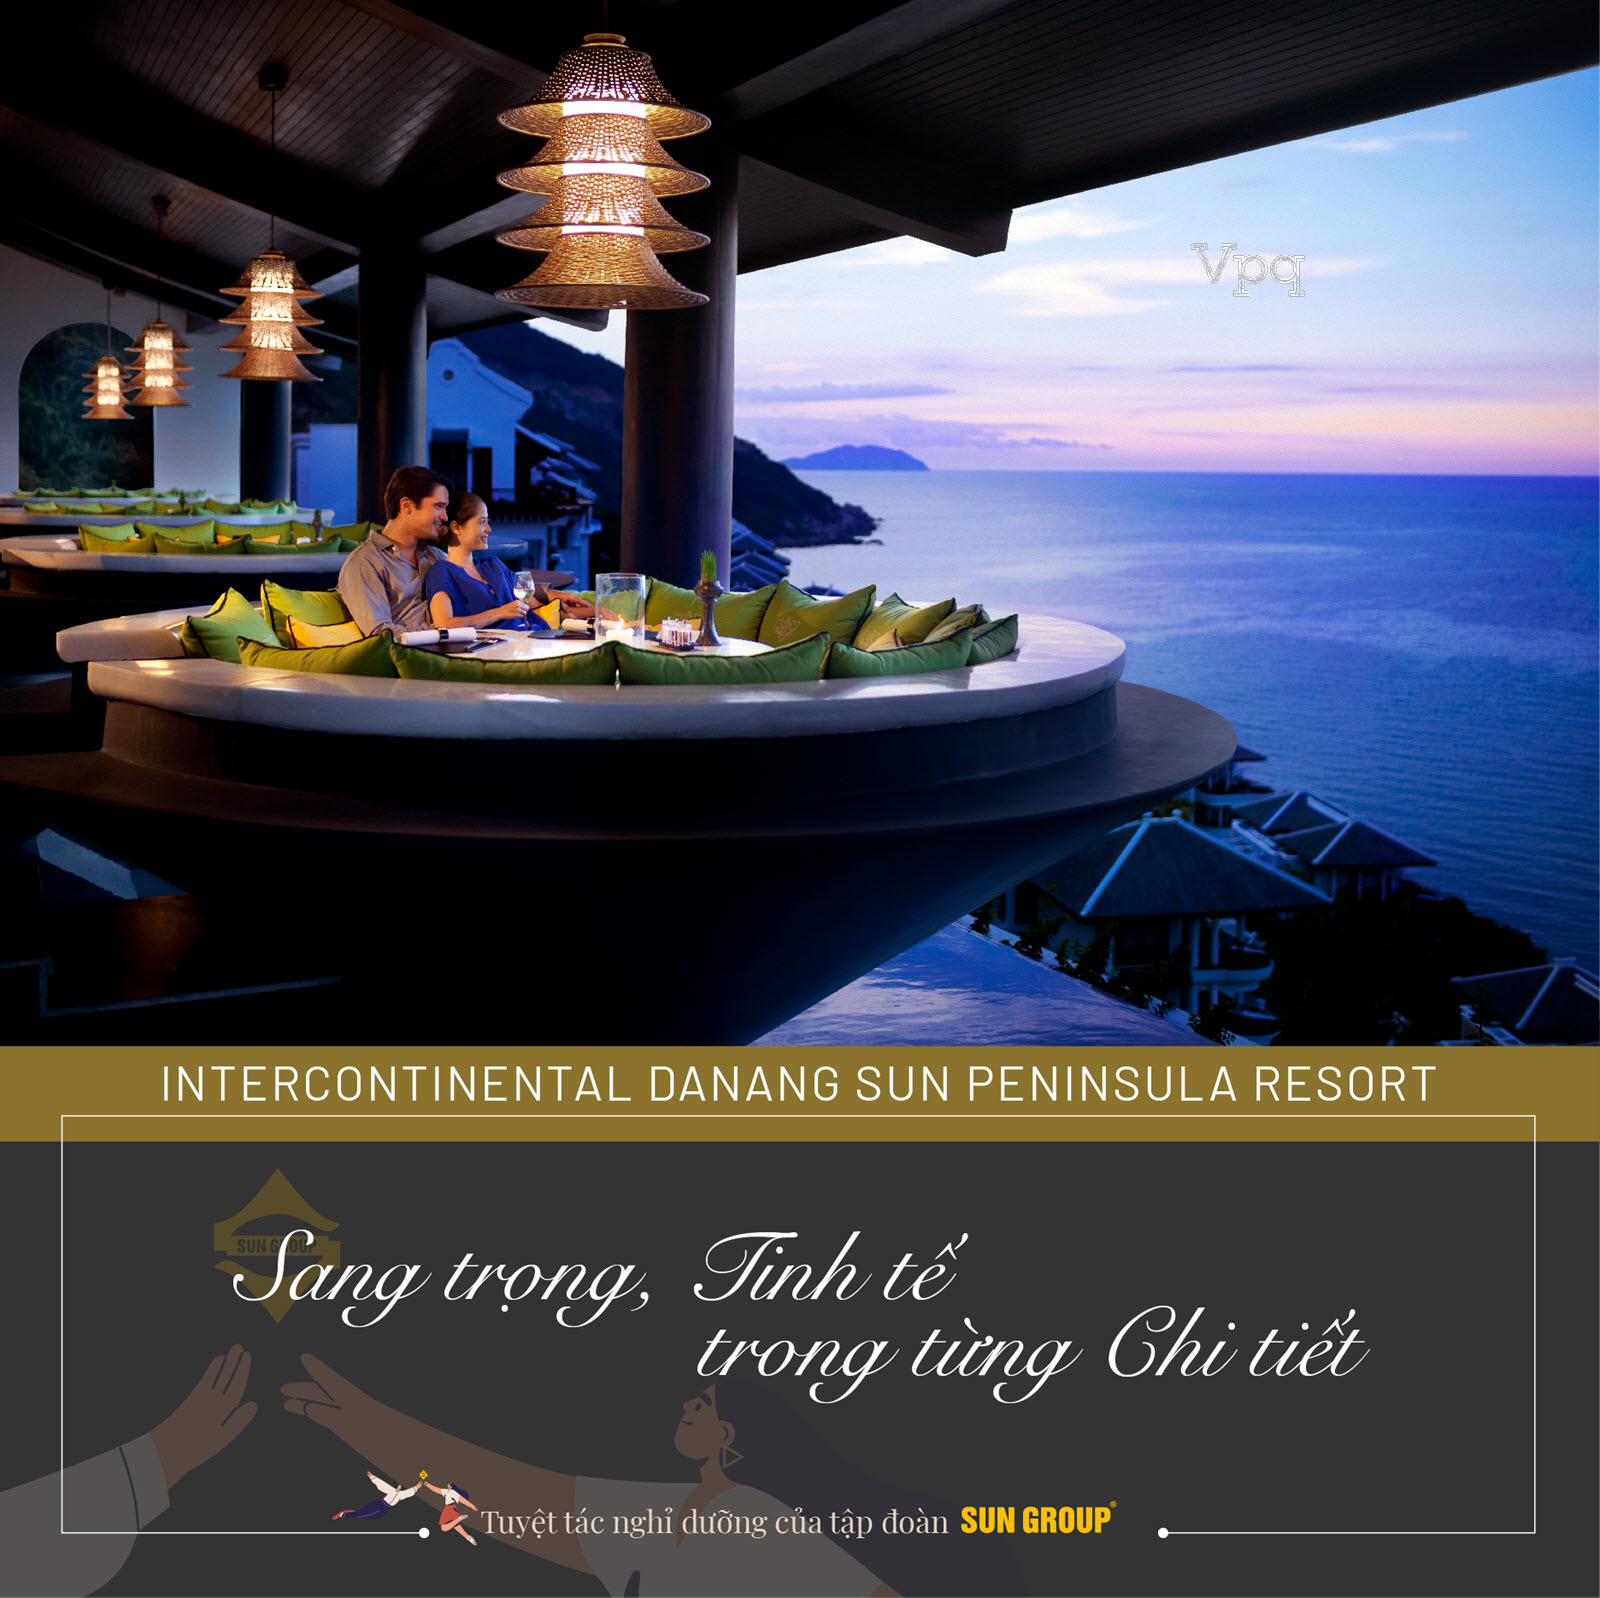 InterContinental Danang Sun Peninsula Resort sang trọng, tinh tế trong từng chi tiết